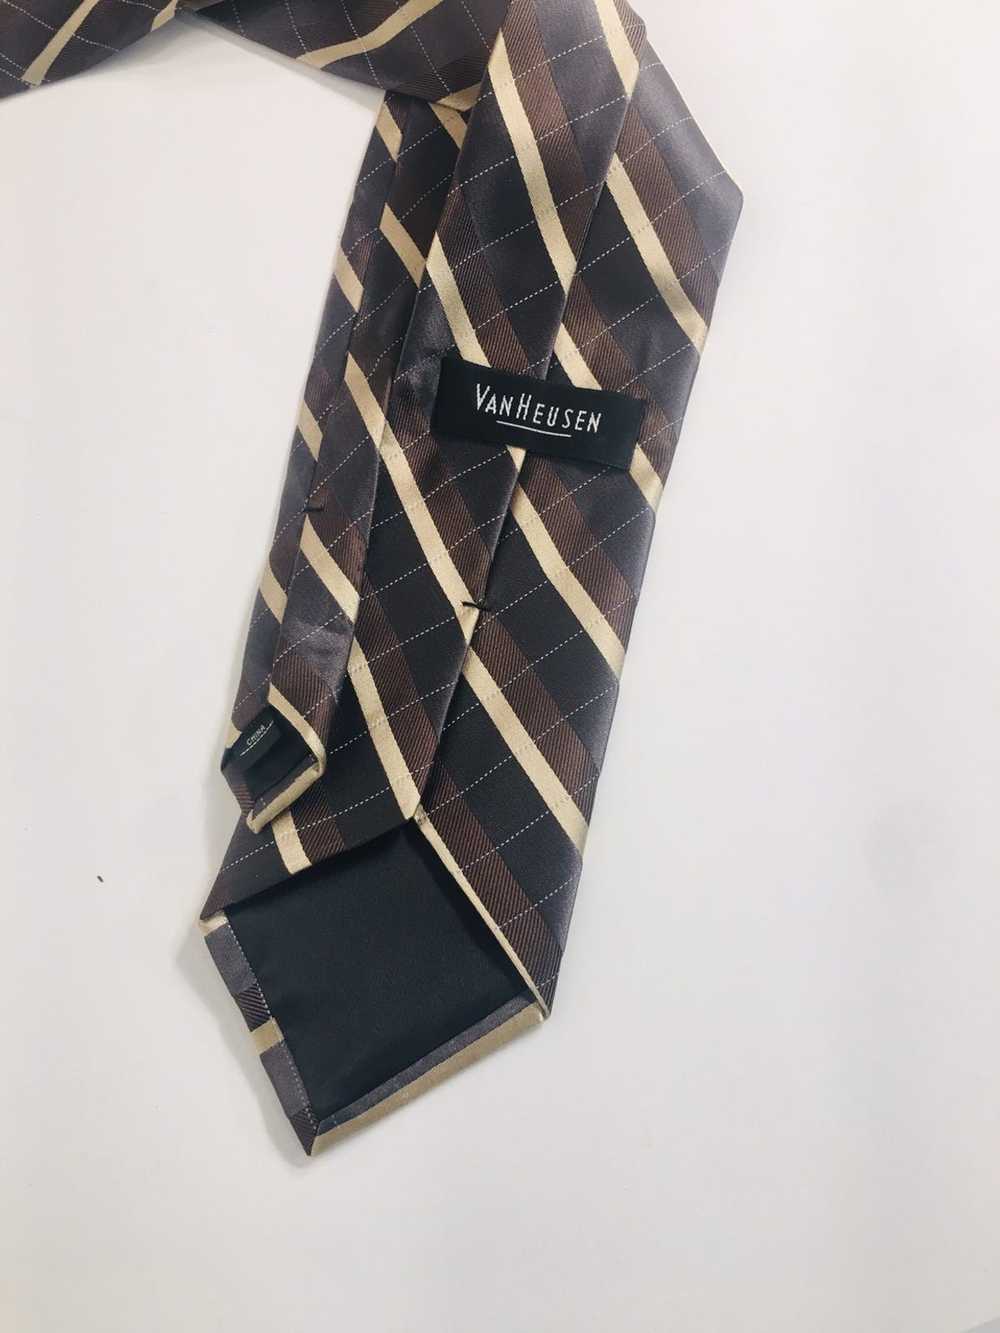 Van Heusen VAN HEUSEN Men’s Silk Necktie - image 4